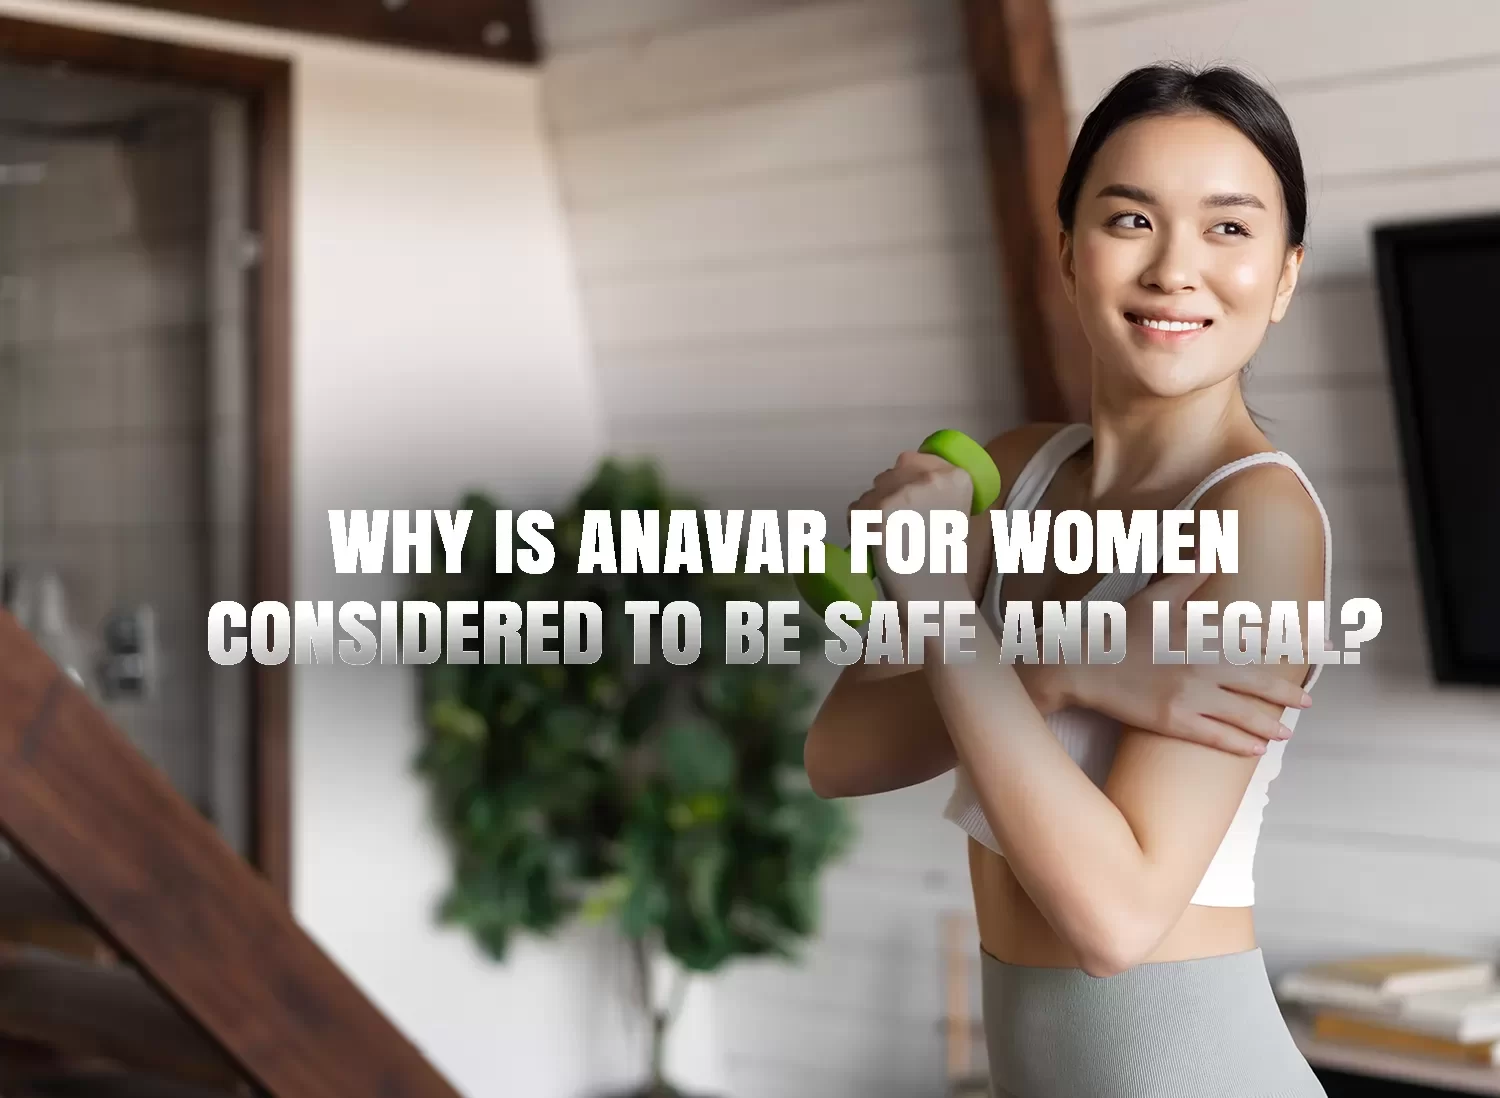 Anavar for women